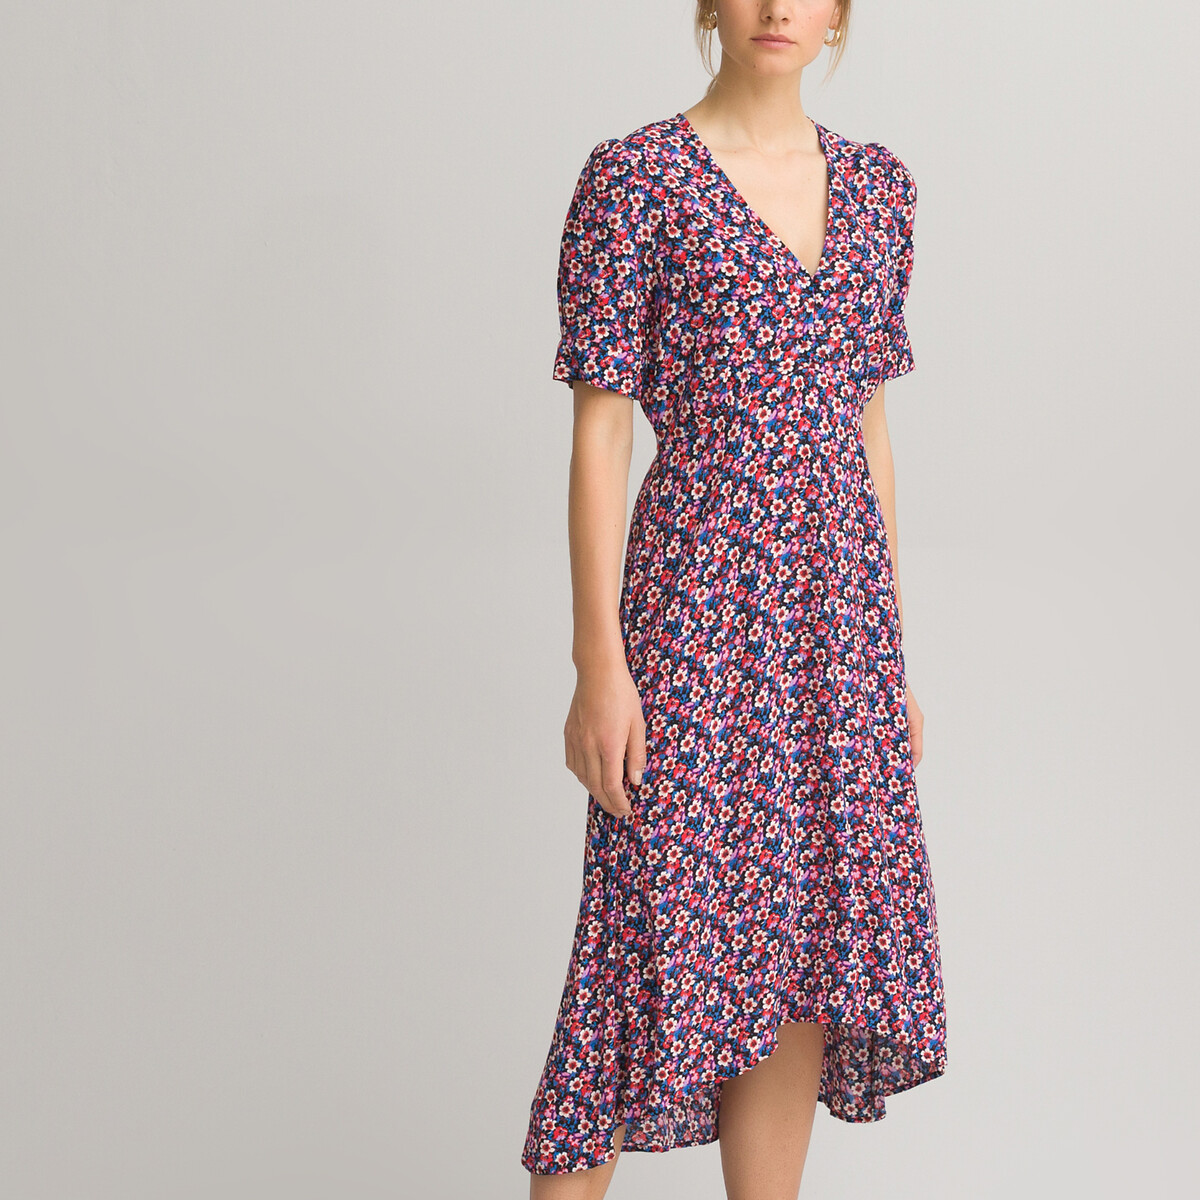 Платье LaRedoute С V-образным вырезом короткие рукава и цветочный принт 42 другие, размер 42 - фото 1